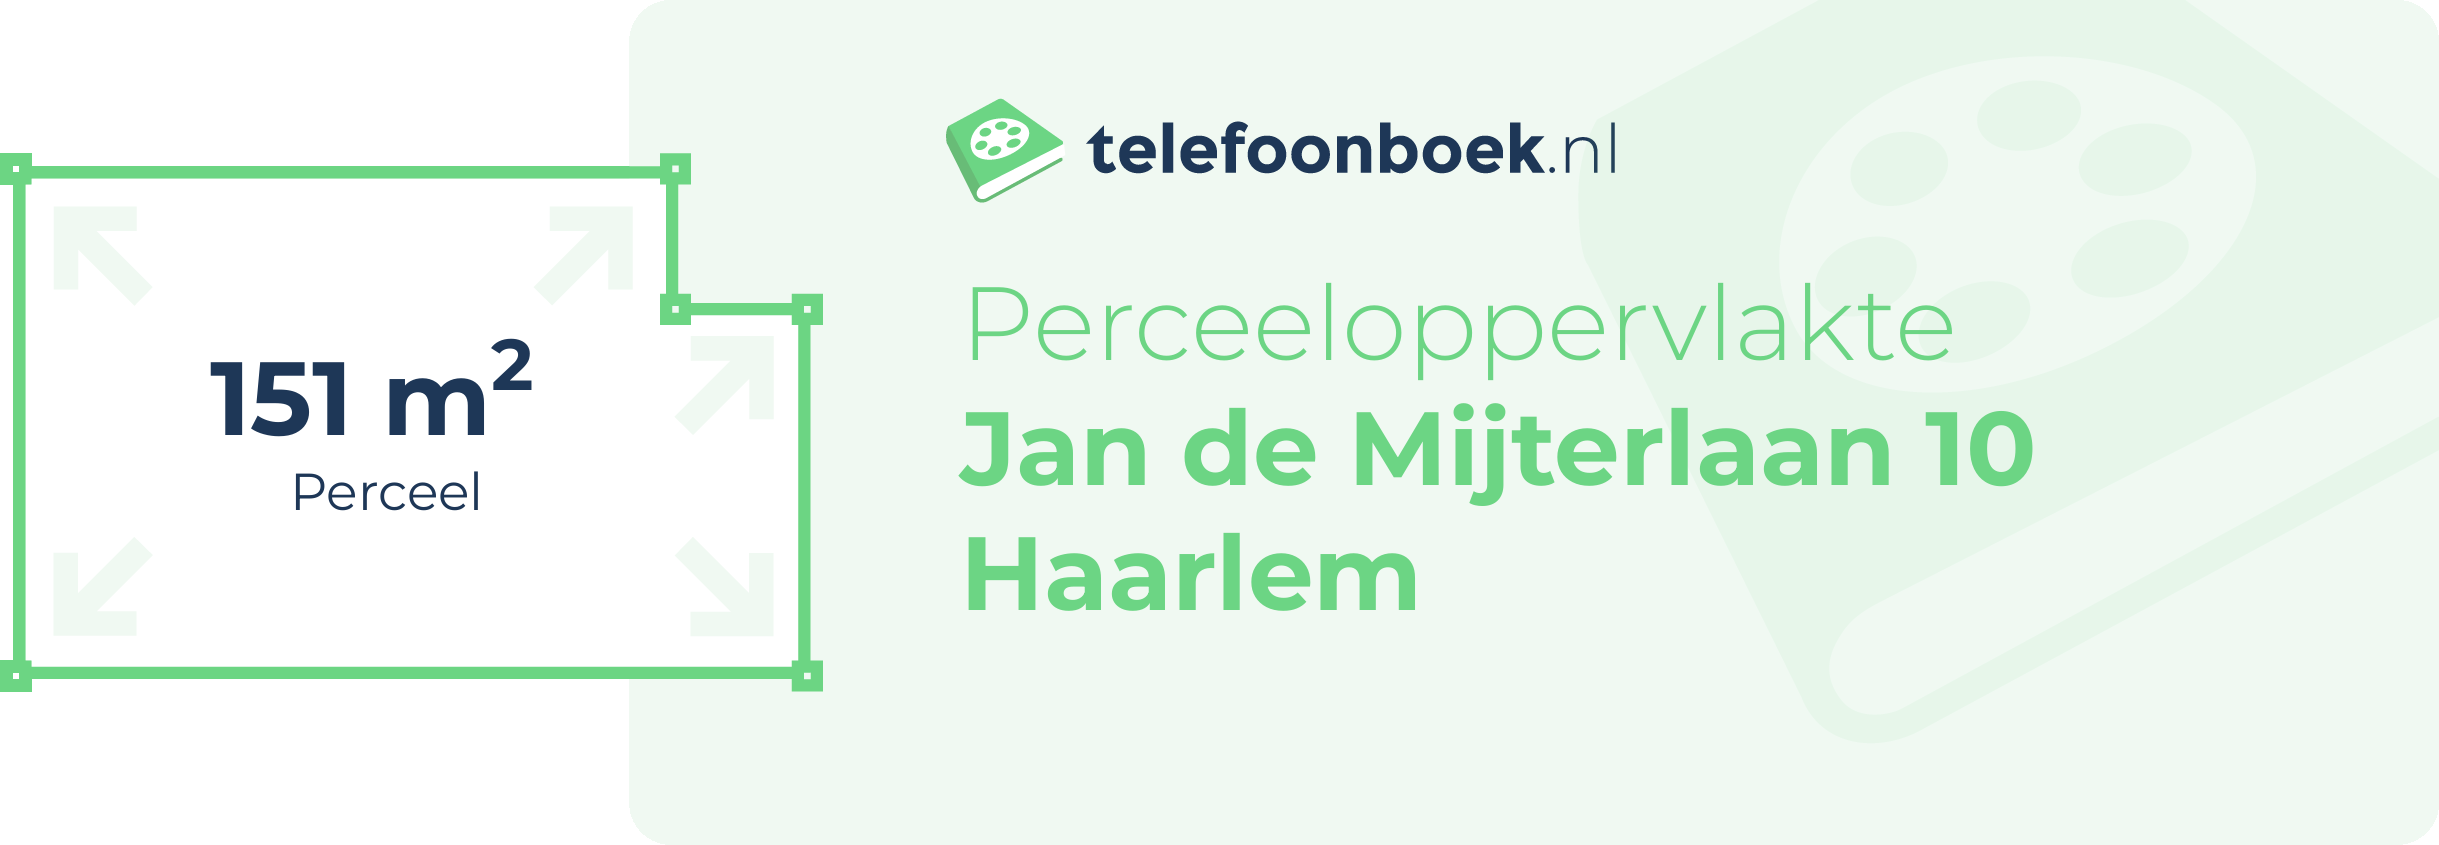 Perceeloppervlakte Jan De Mijterlaan 10 Haarlem